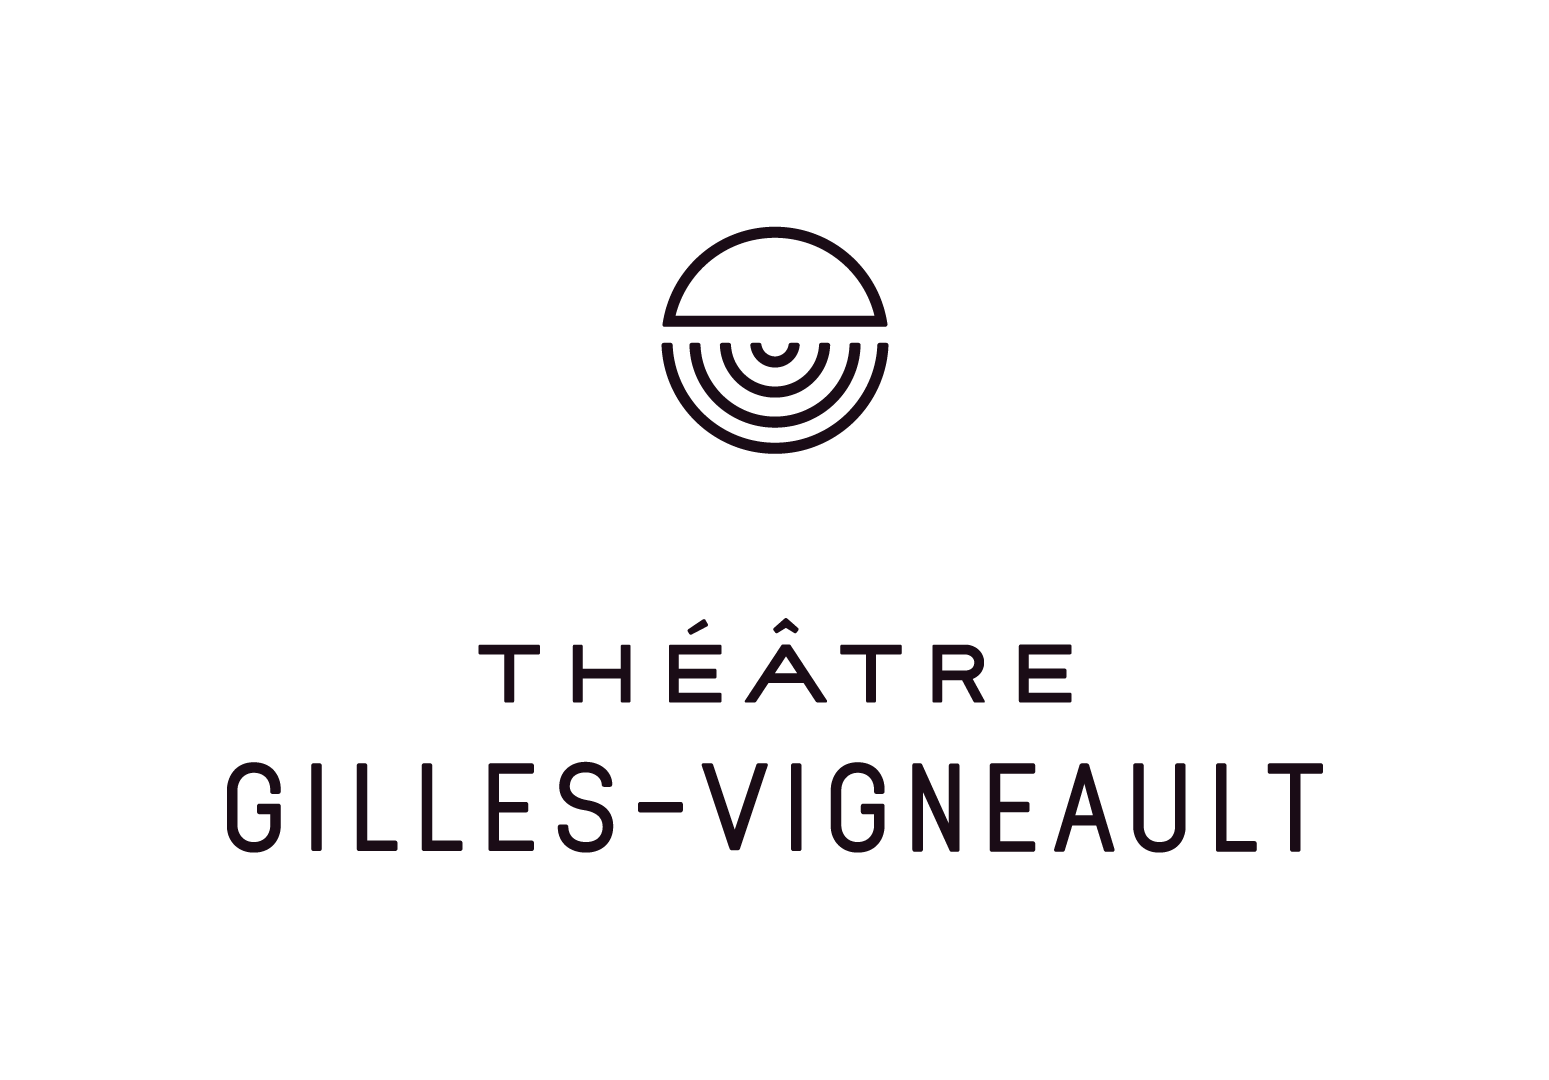 Théâtre Gilles Vigneault